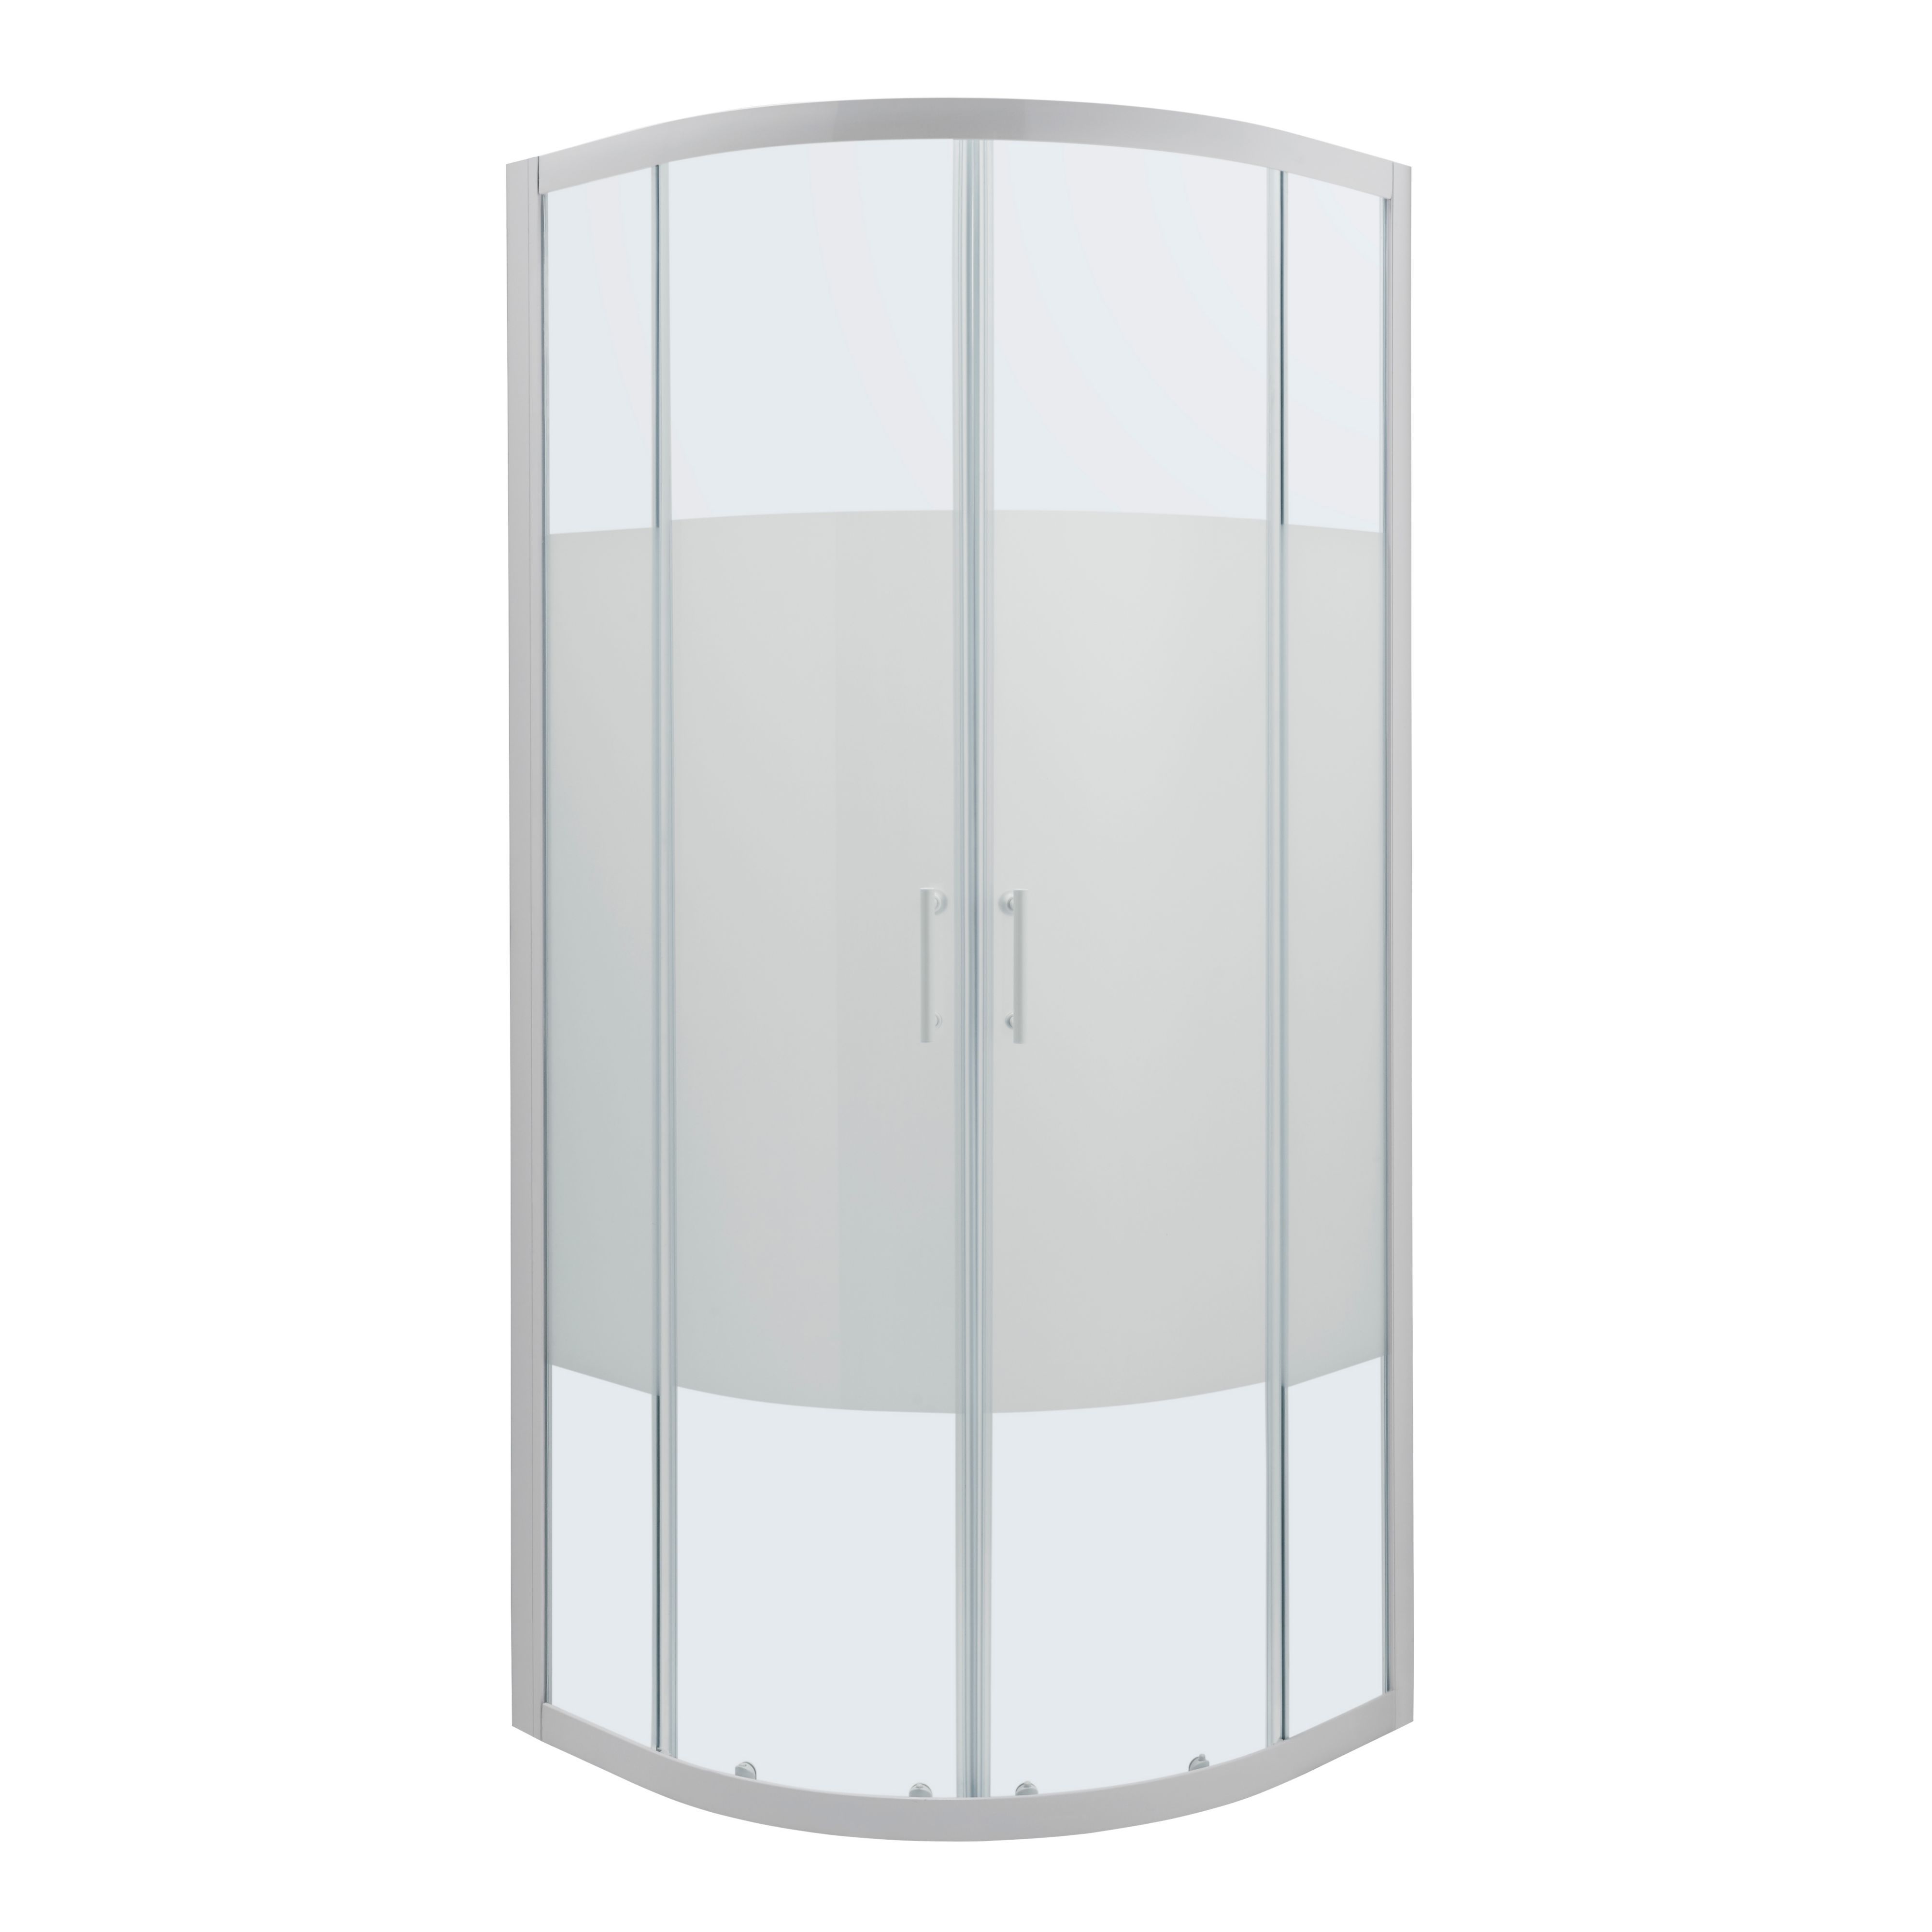 Cooke & Lewis Onega Framed Frosted Quadrant Shower enclosure - Corner entry double sliding door (W)80cm (D)80cm